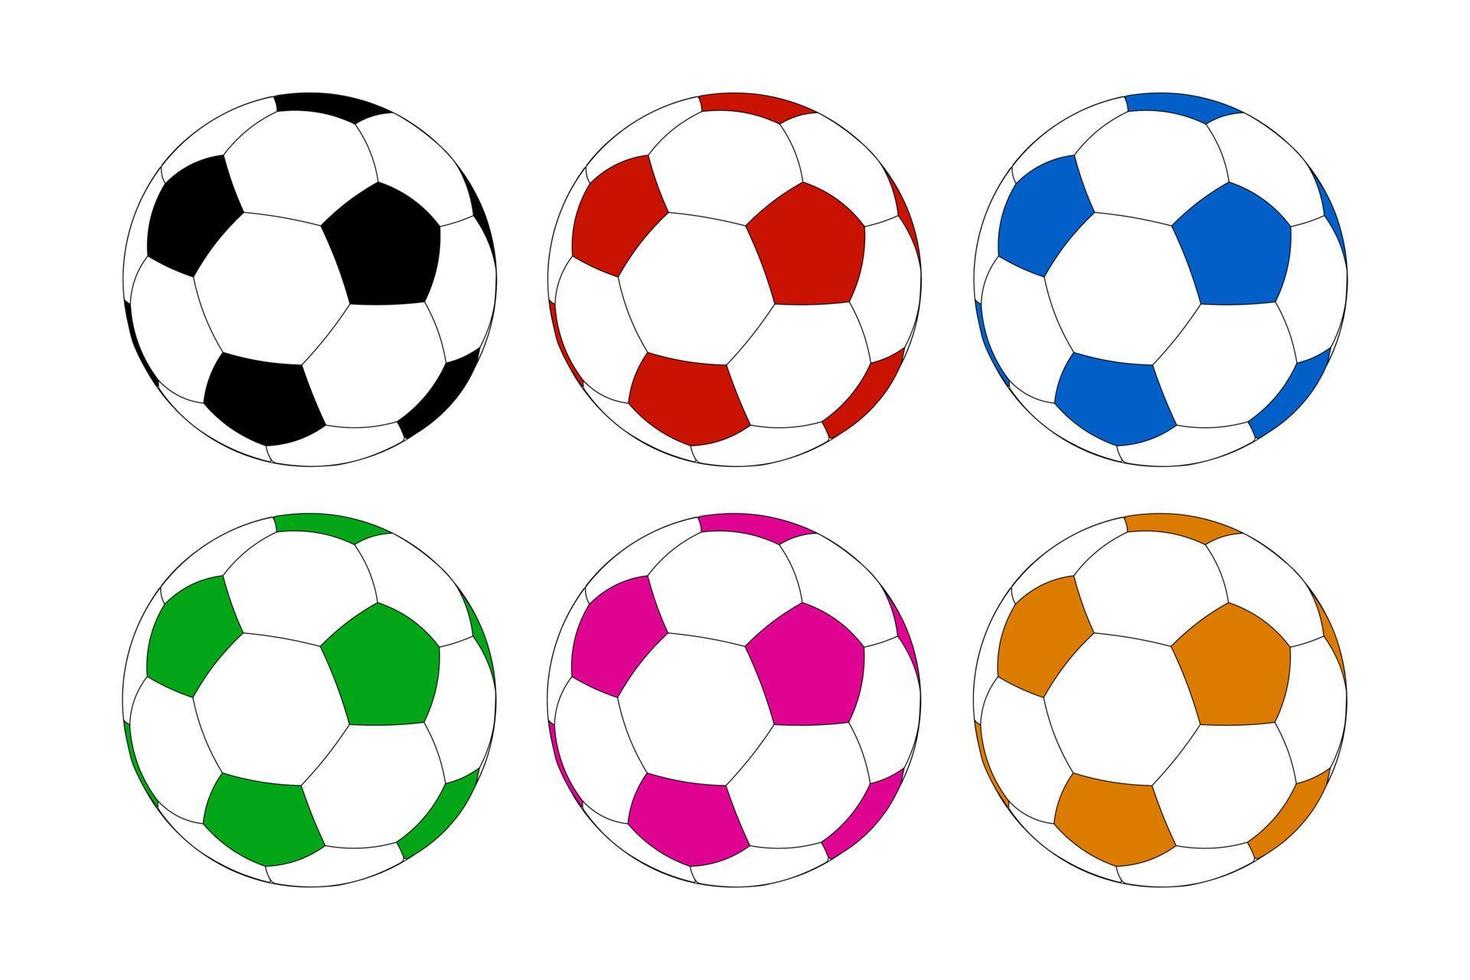 juego de fútbol o balones de fútbol icono de equipo deportivo vector